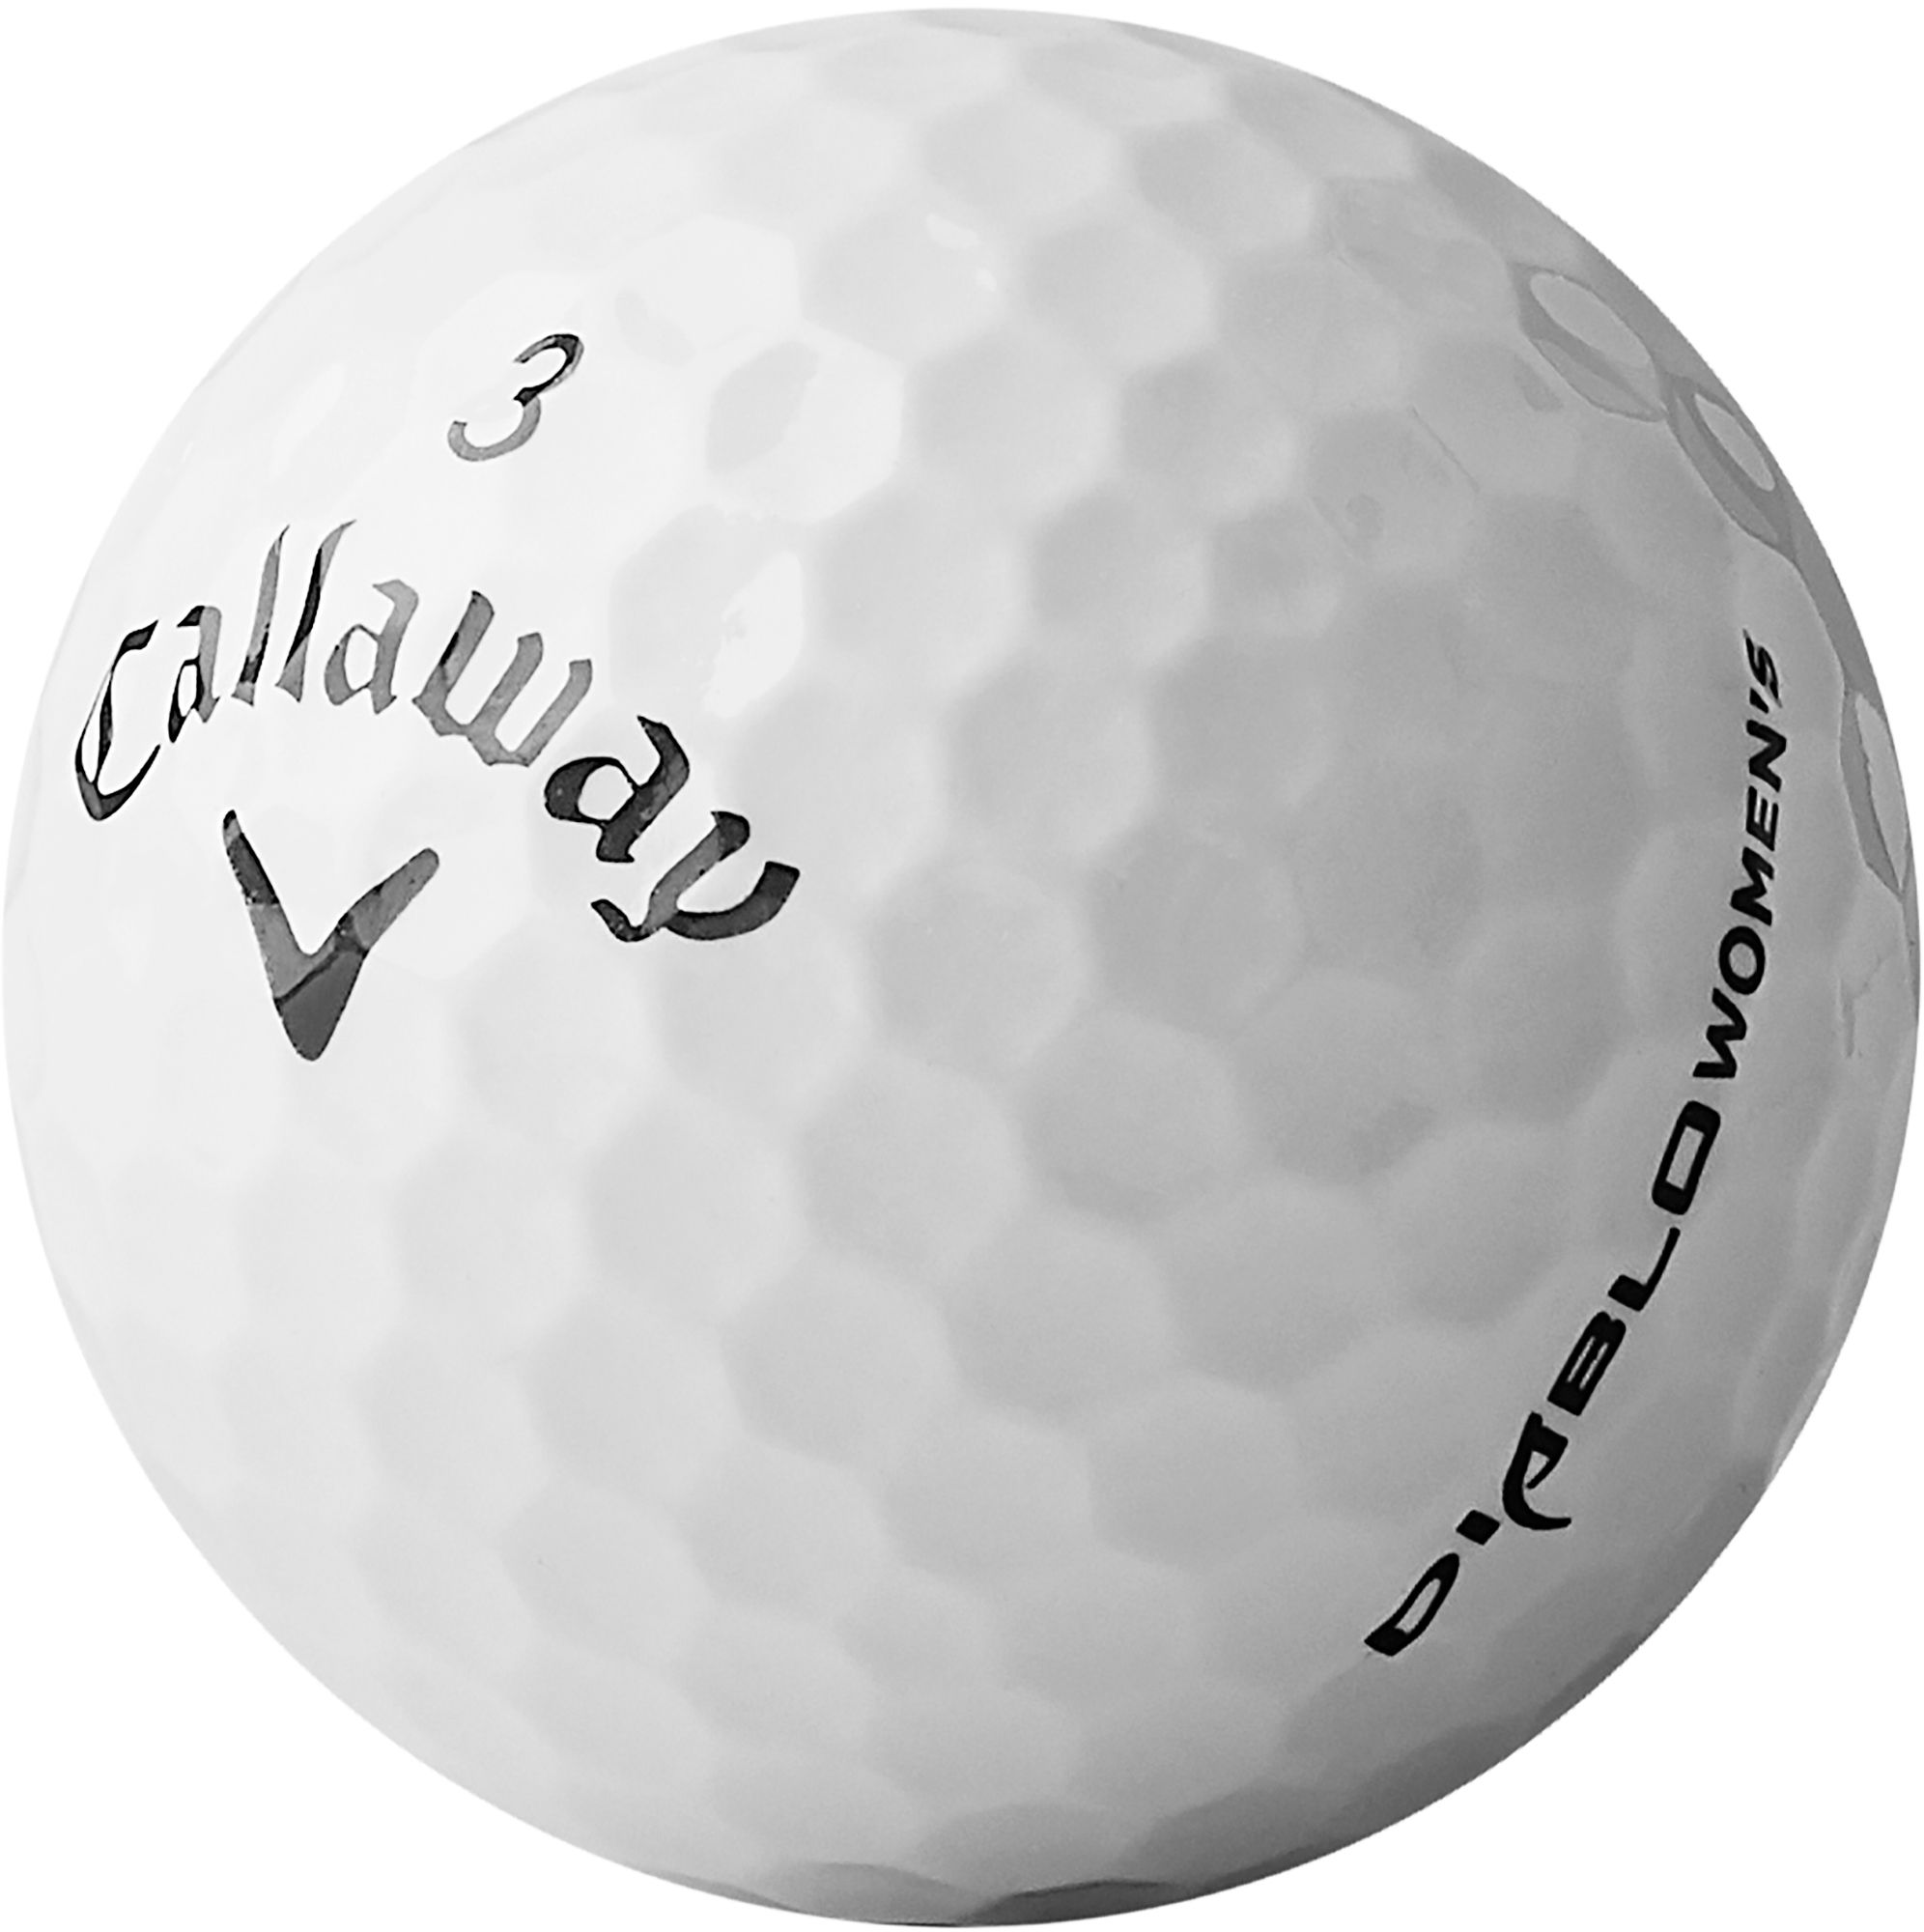 Callaway Women's 2020 Diablo Golf Balls